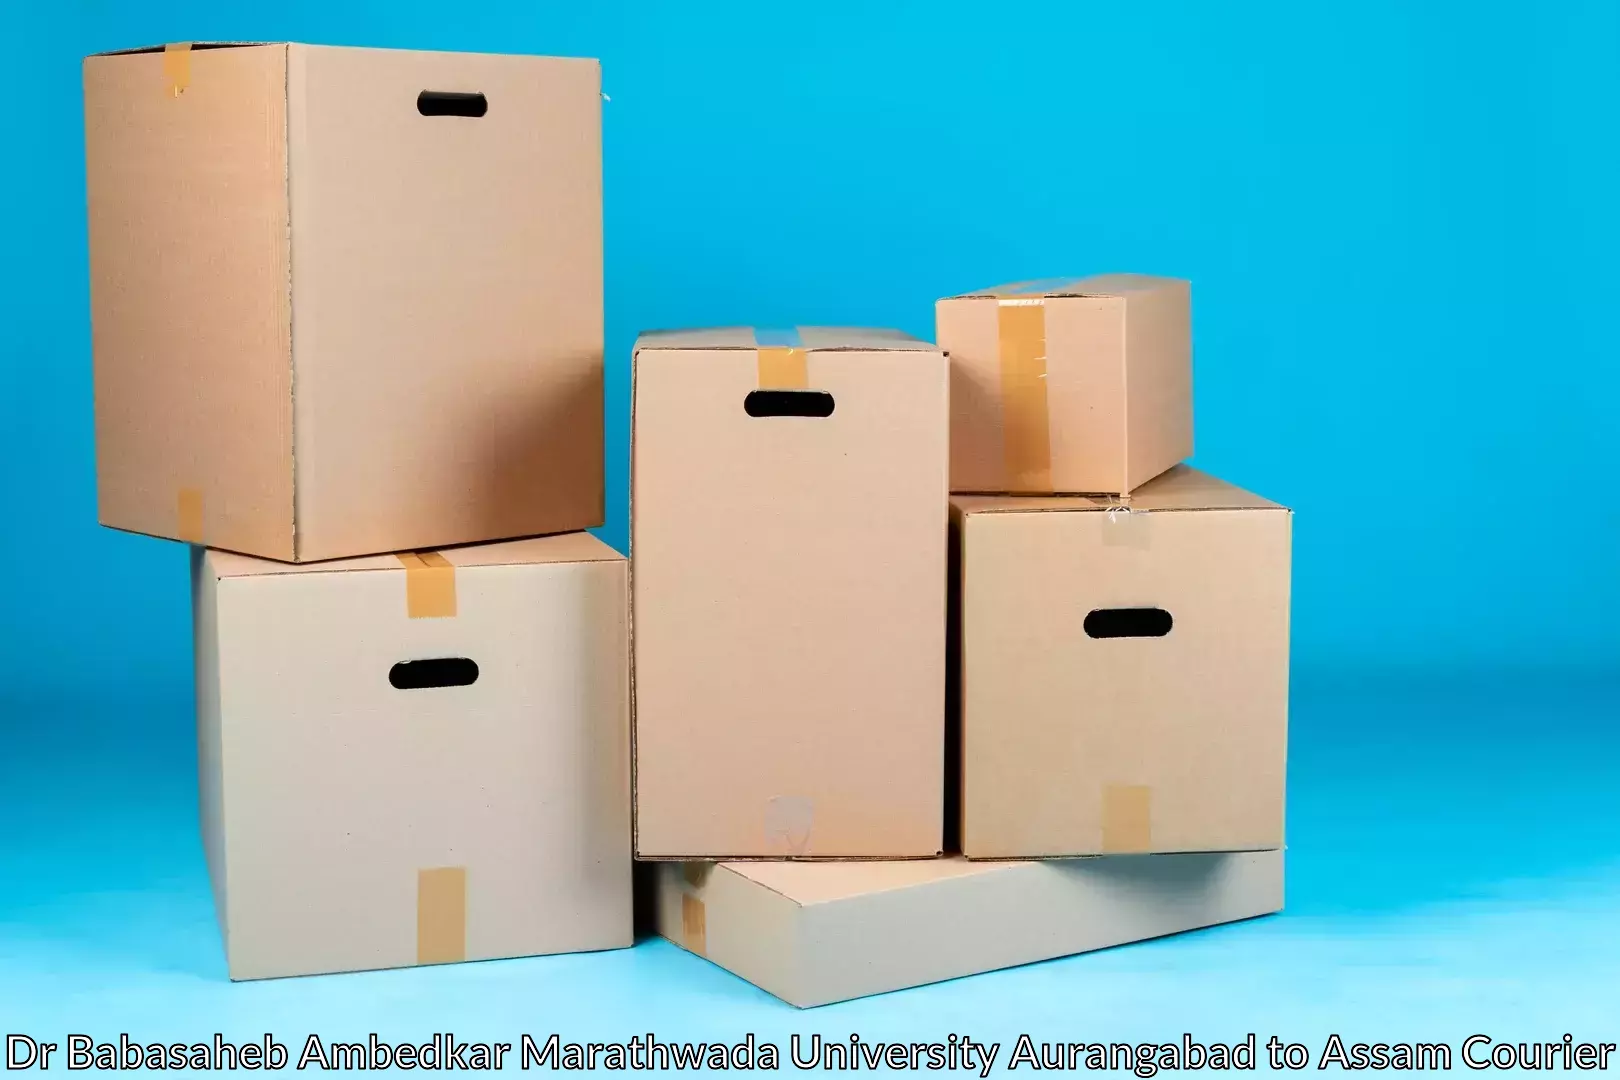 Professional movers and packers Dr Babasaheb Ambedkar Marathwada University Aurangabad to Goalpara